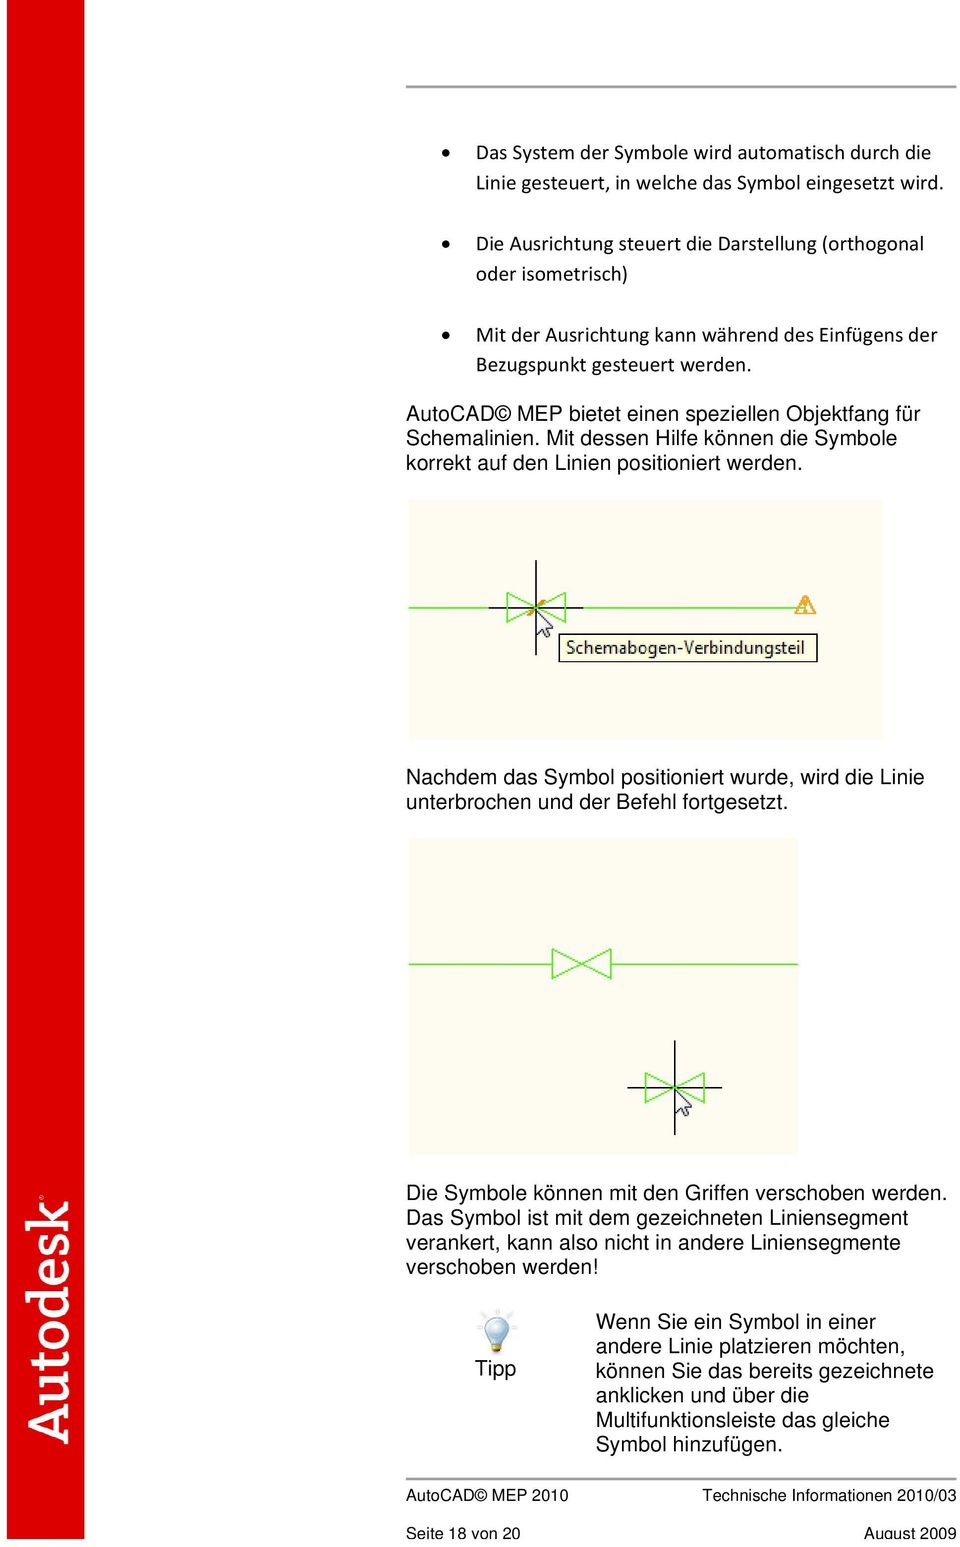 AutoCAD MEP bietet einen speziellen Objektfang für Schemalinien. Mit dessen Hilfe können die Symbole korrekt auf den Linien positioniert werden.